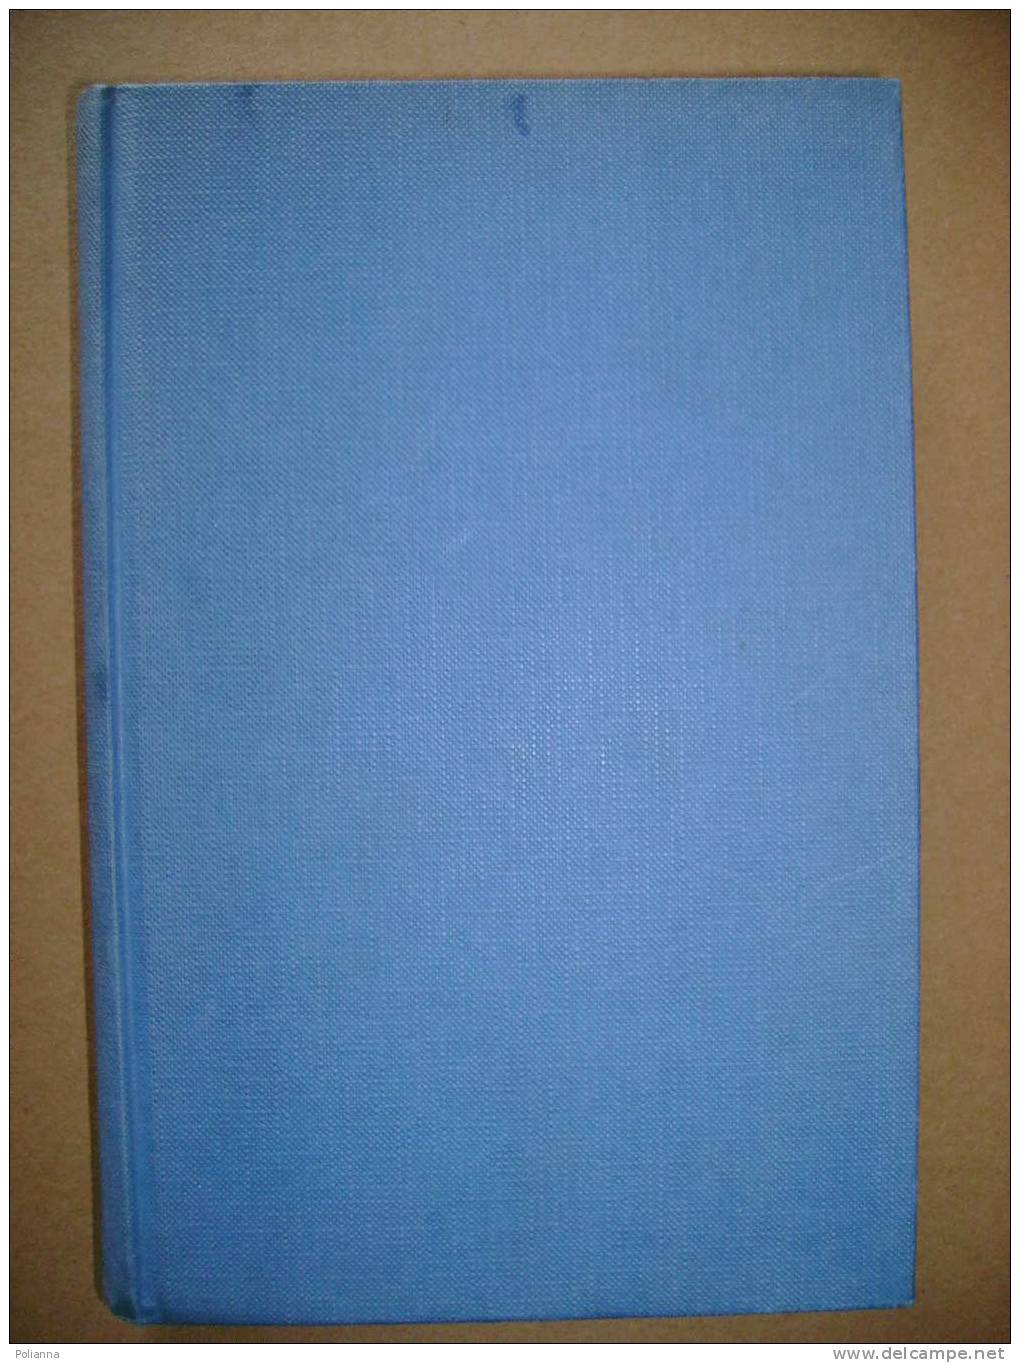 PAB/6 Graham Greene IN VIAGGIO CON LA ZIA Mondadori I Ed.1970 - Action & Adventure